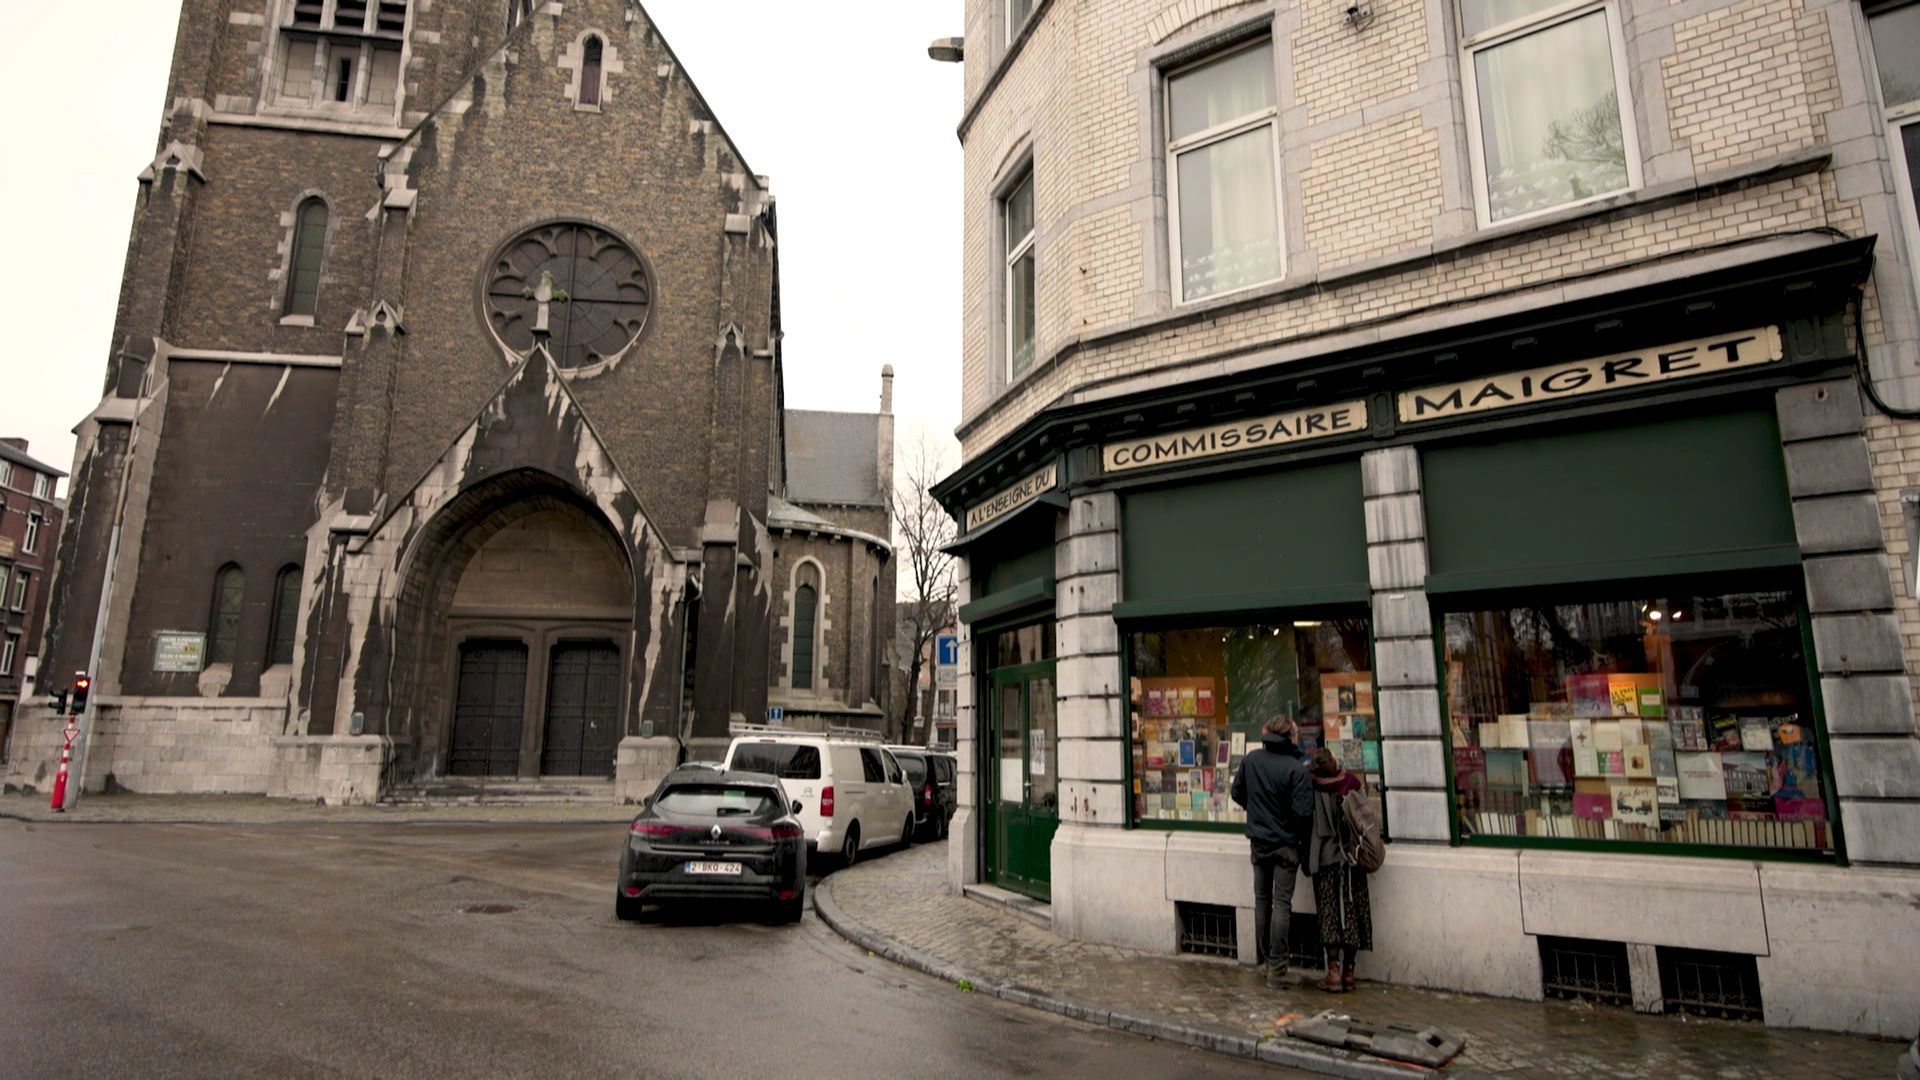 L'église St-Pholien et la librairie "A l'enseigne du Commissaire Maigret"